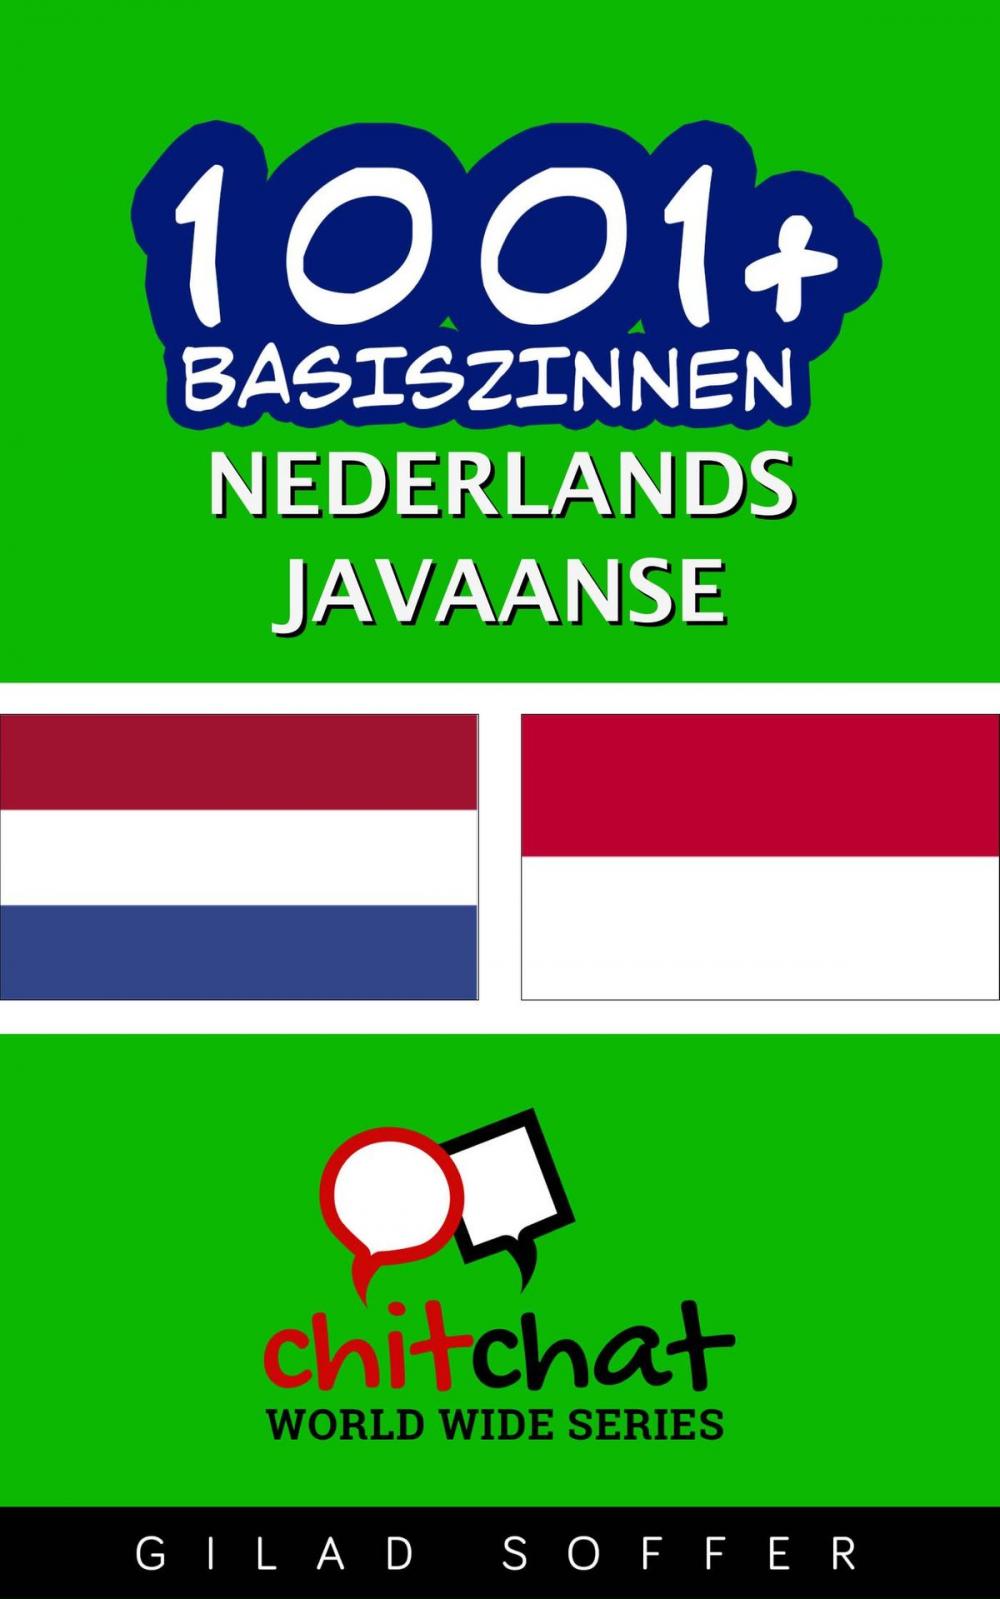 Big bigCover of 1001+ basiszinnen nederlands - Javaanse